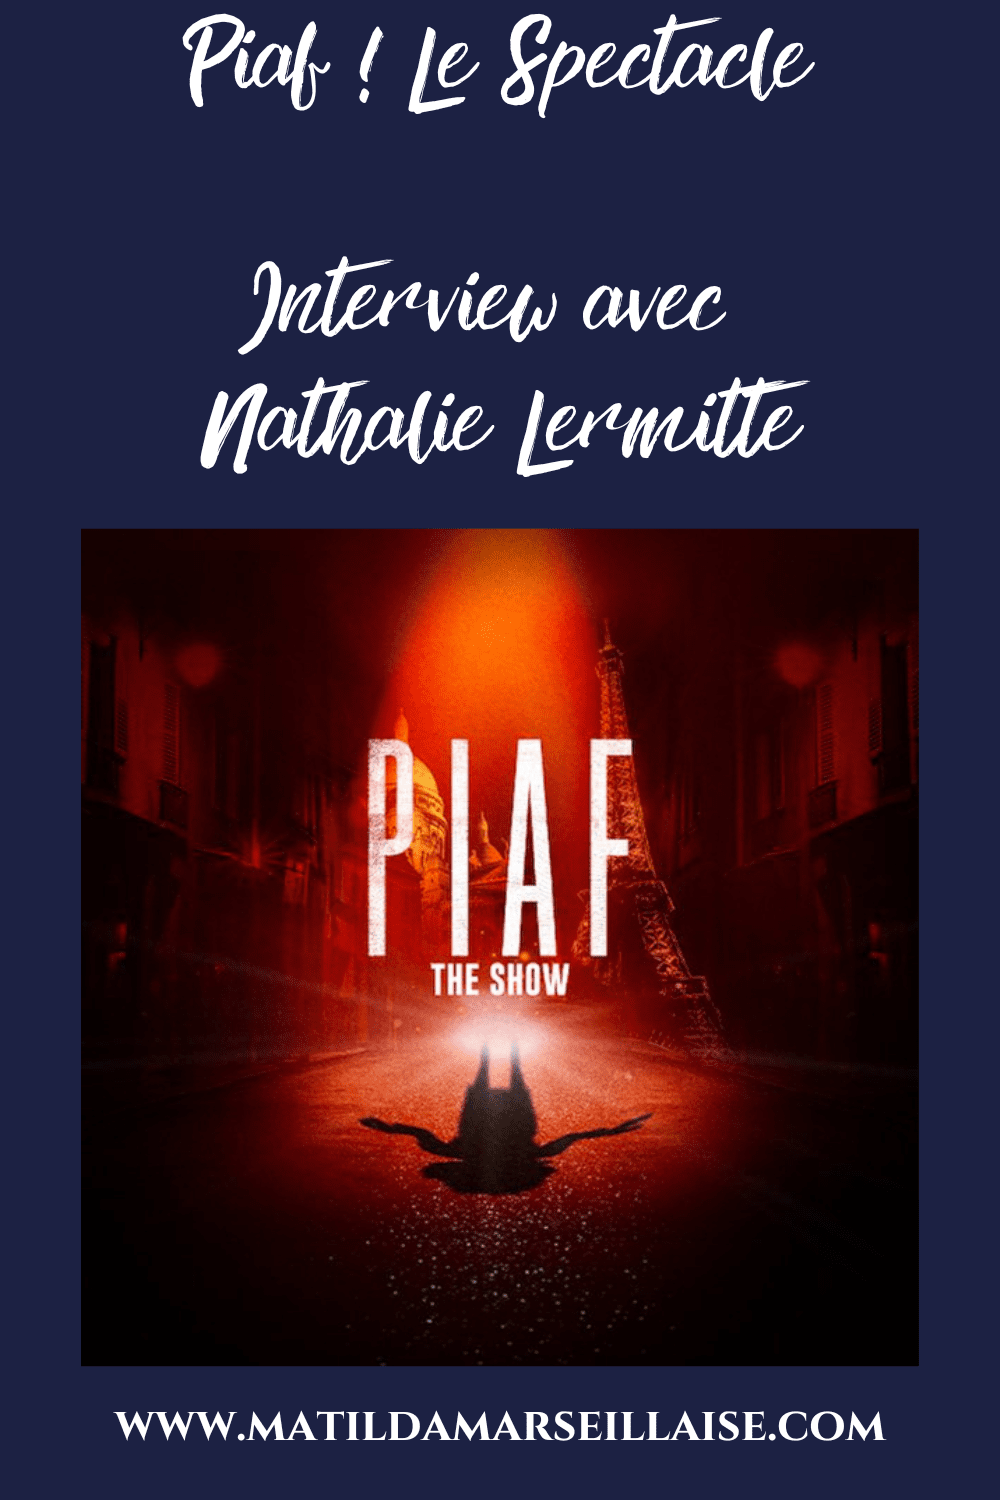 Nathalie Lermitte, héritière musicale de Piaf vient en Australie pour Piaf ! Le spectacle